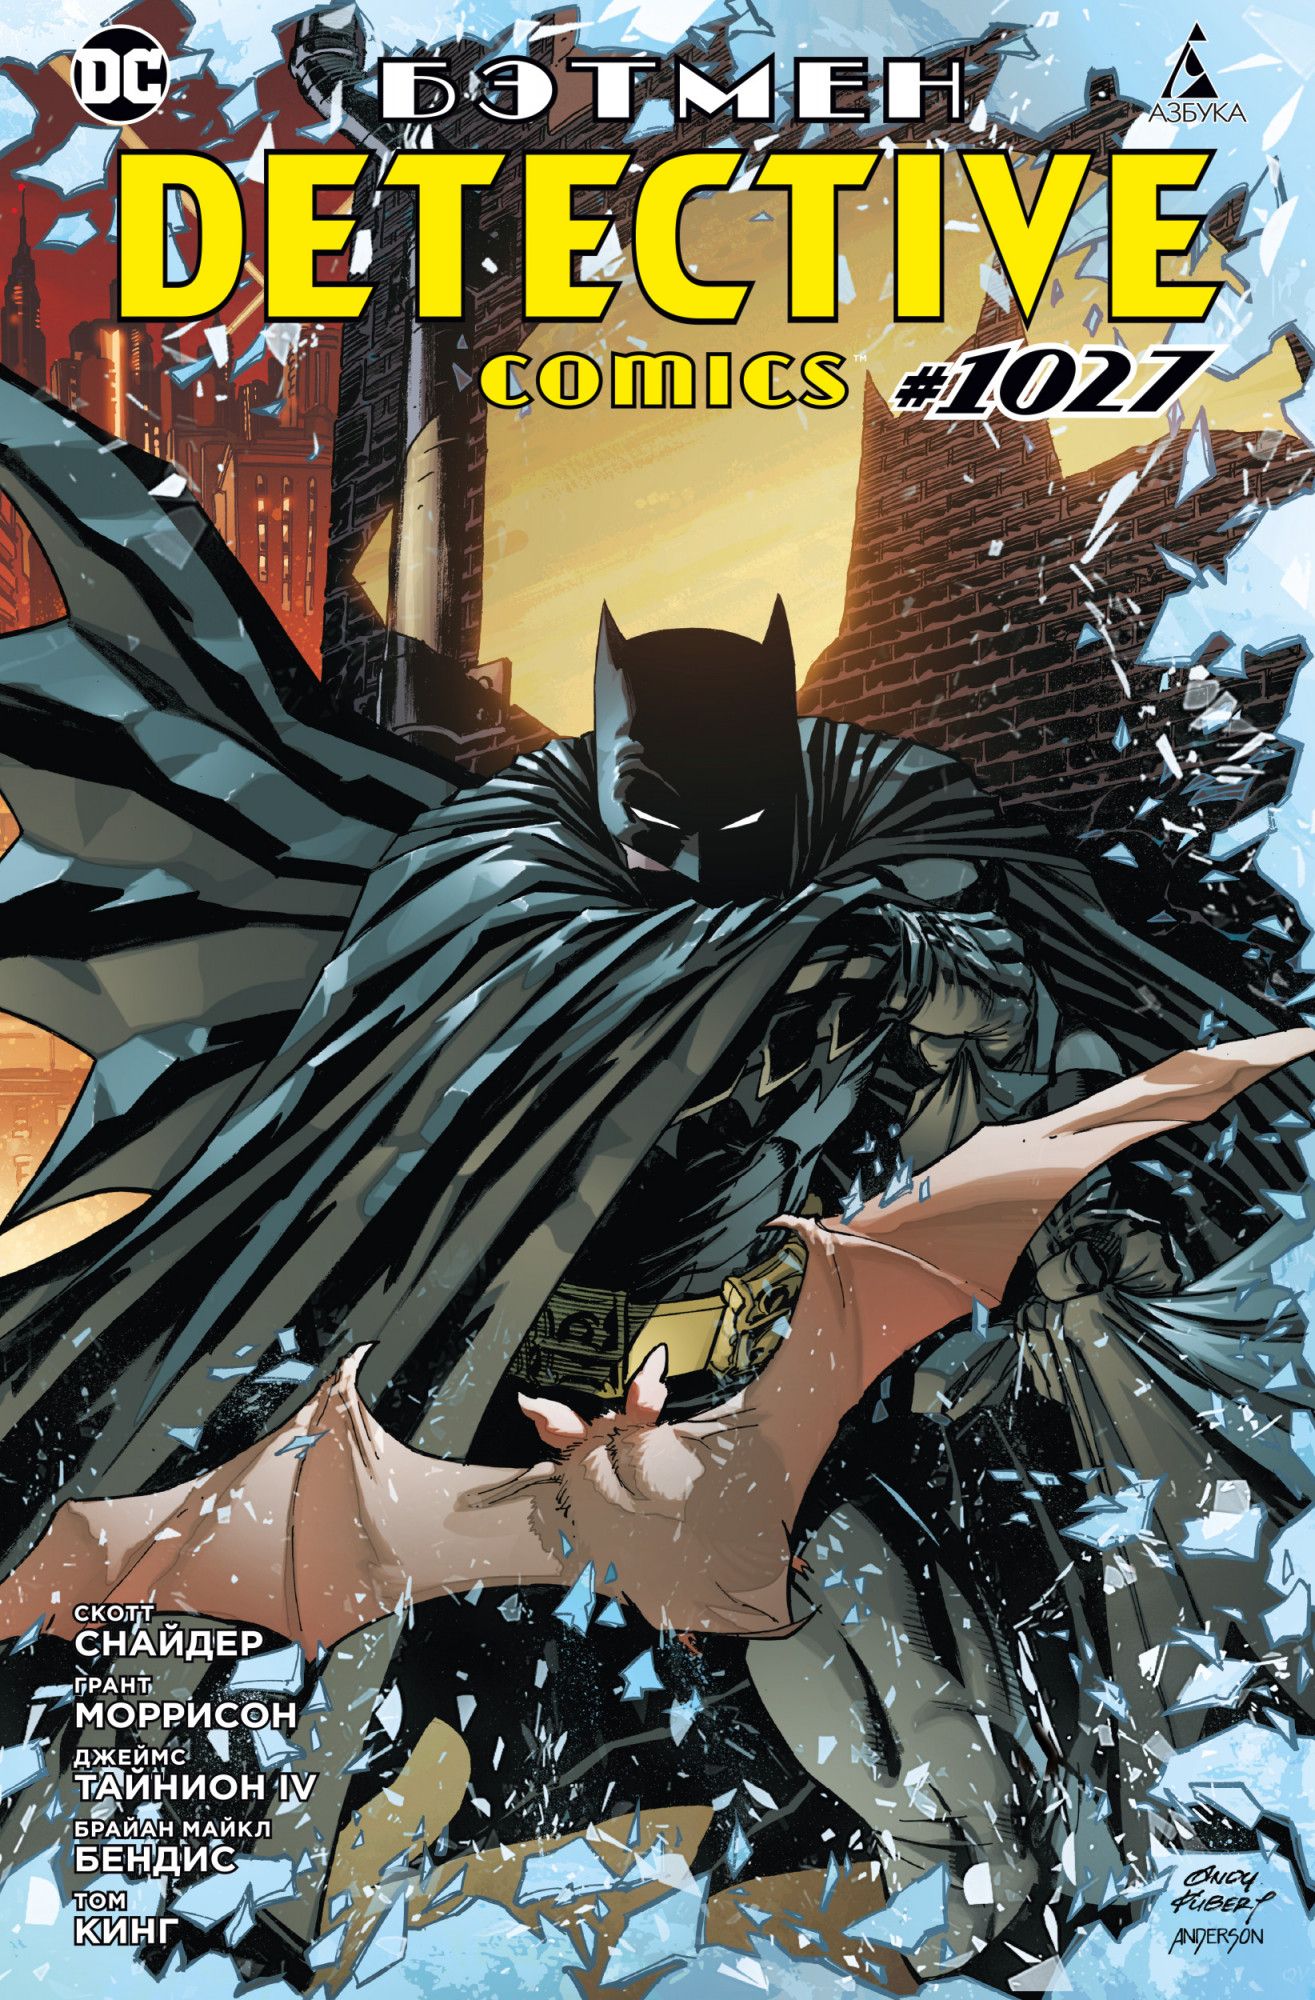 Снайдер С., Моррисон Г. - Бэтмен. Detective comics #1027